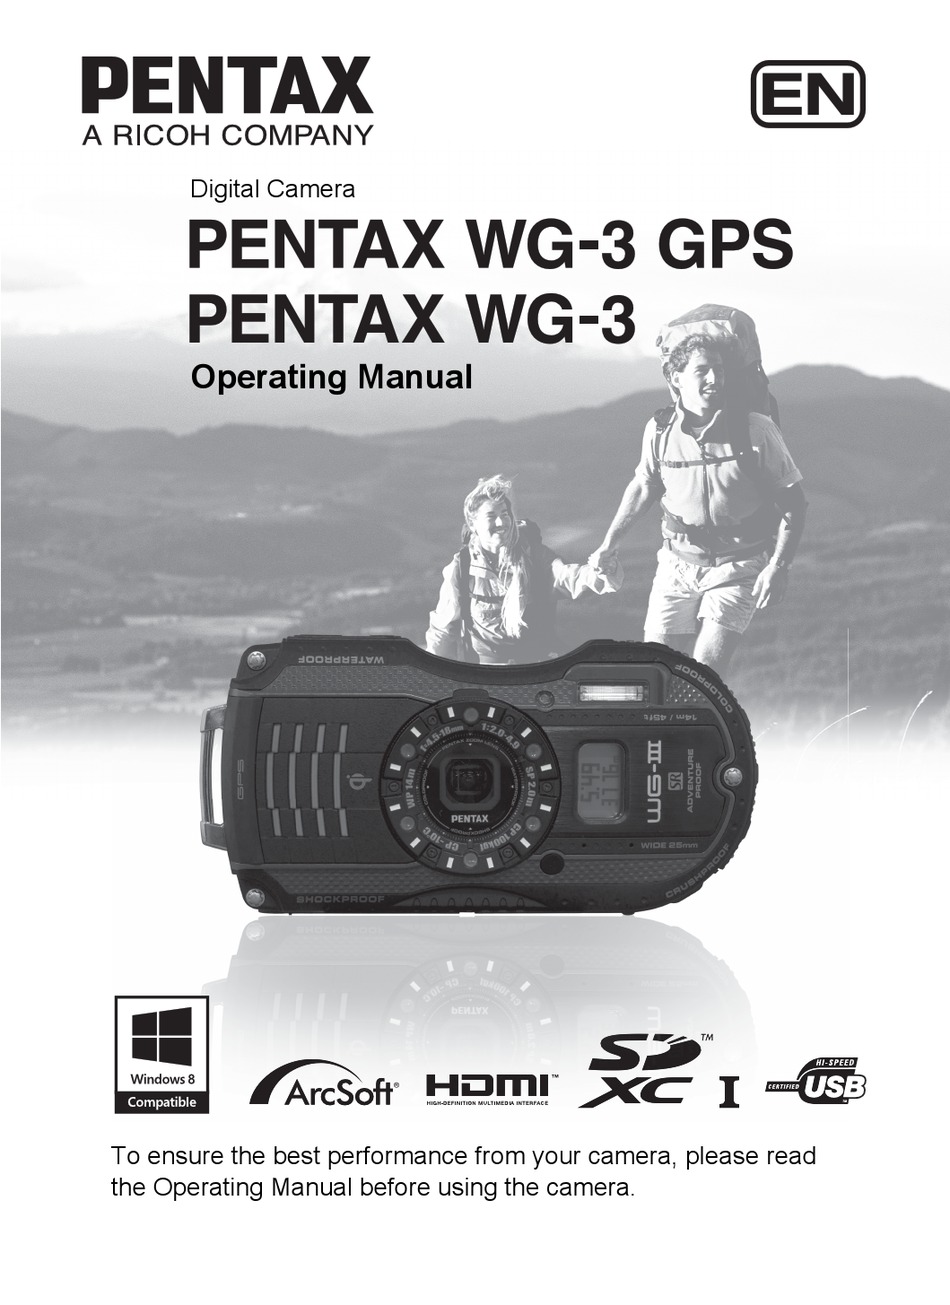 PENTAX WG-3 GPS OPERATING MANUAL Pdf Download | ManualsLib